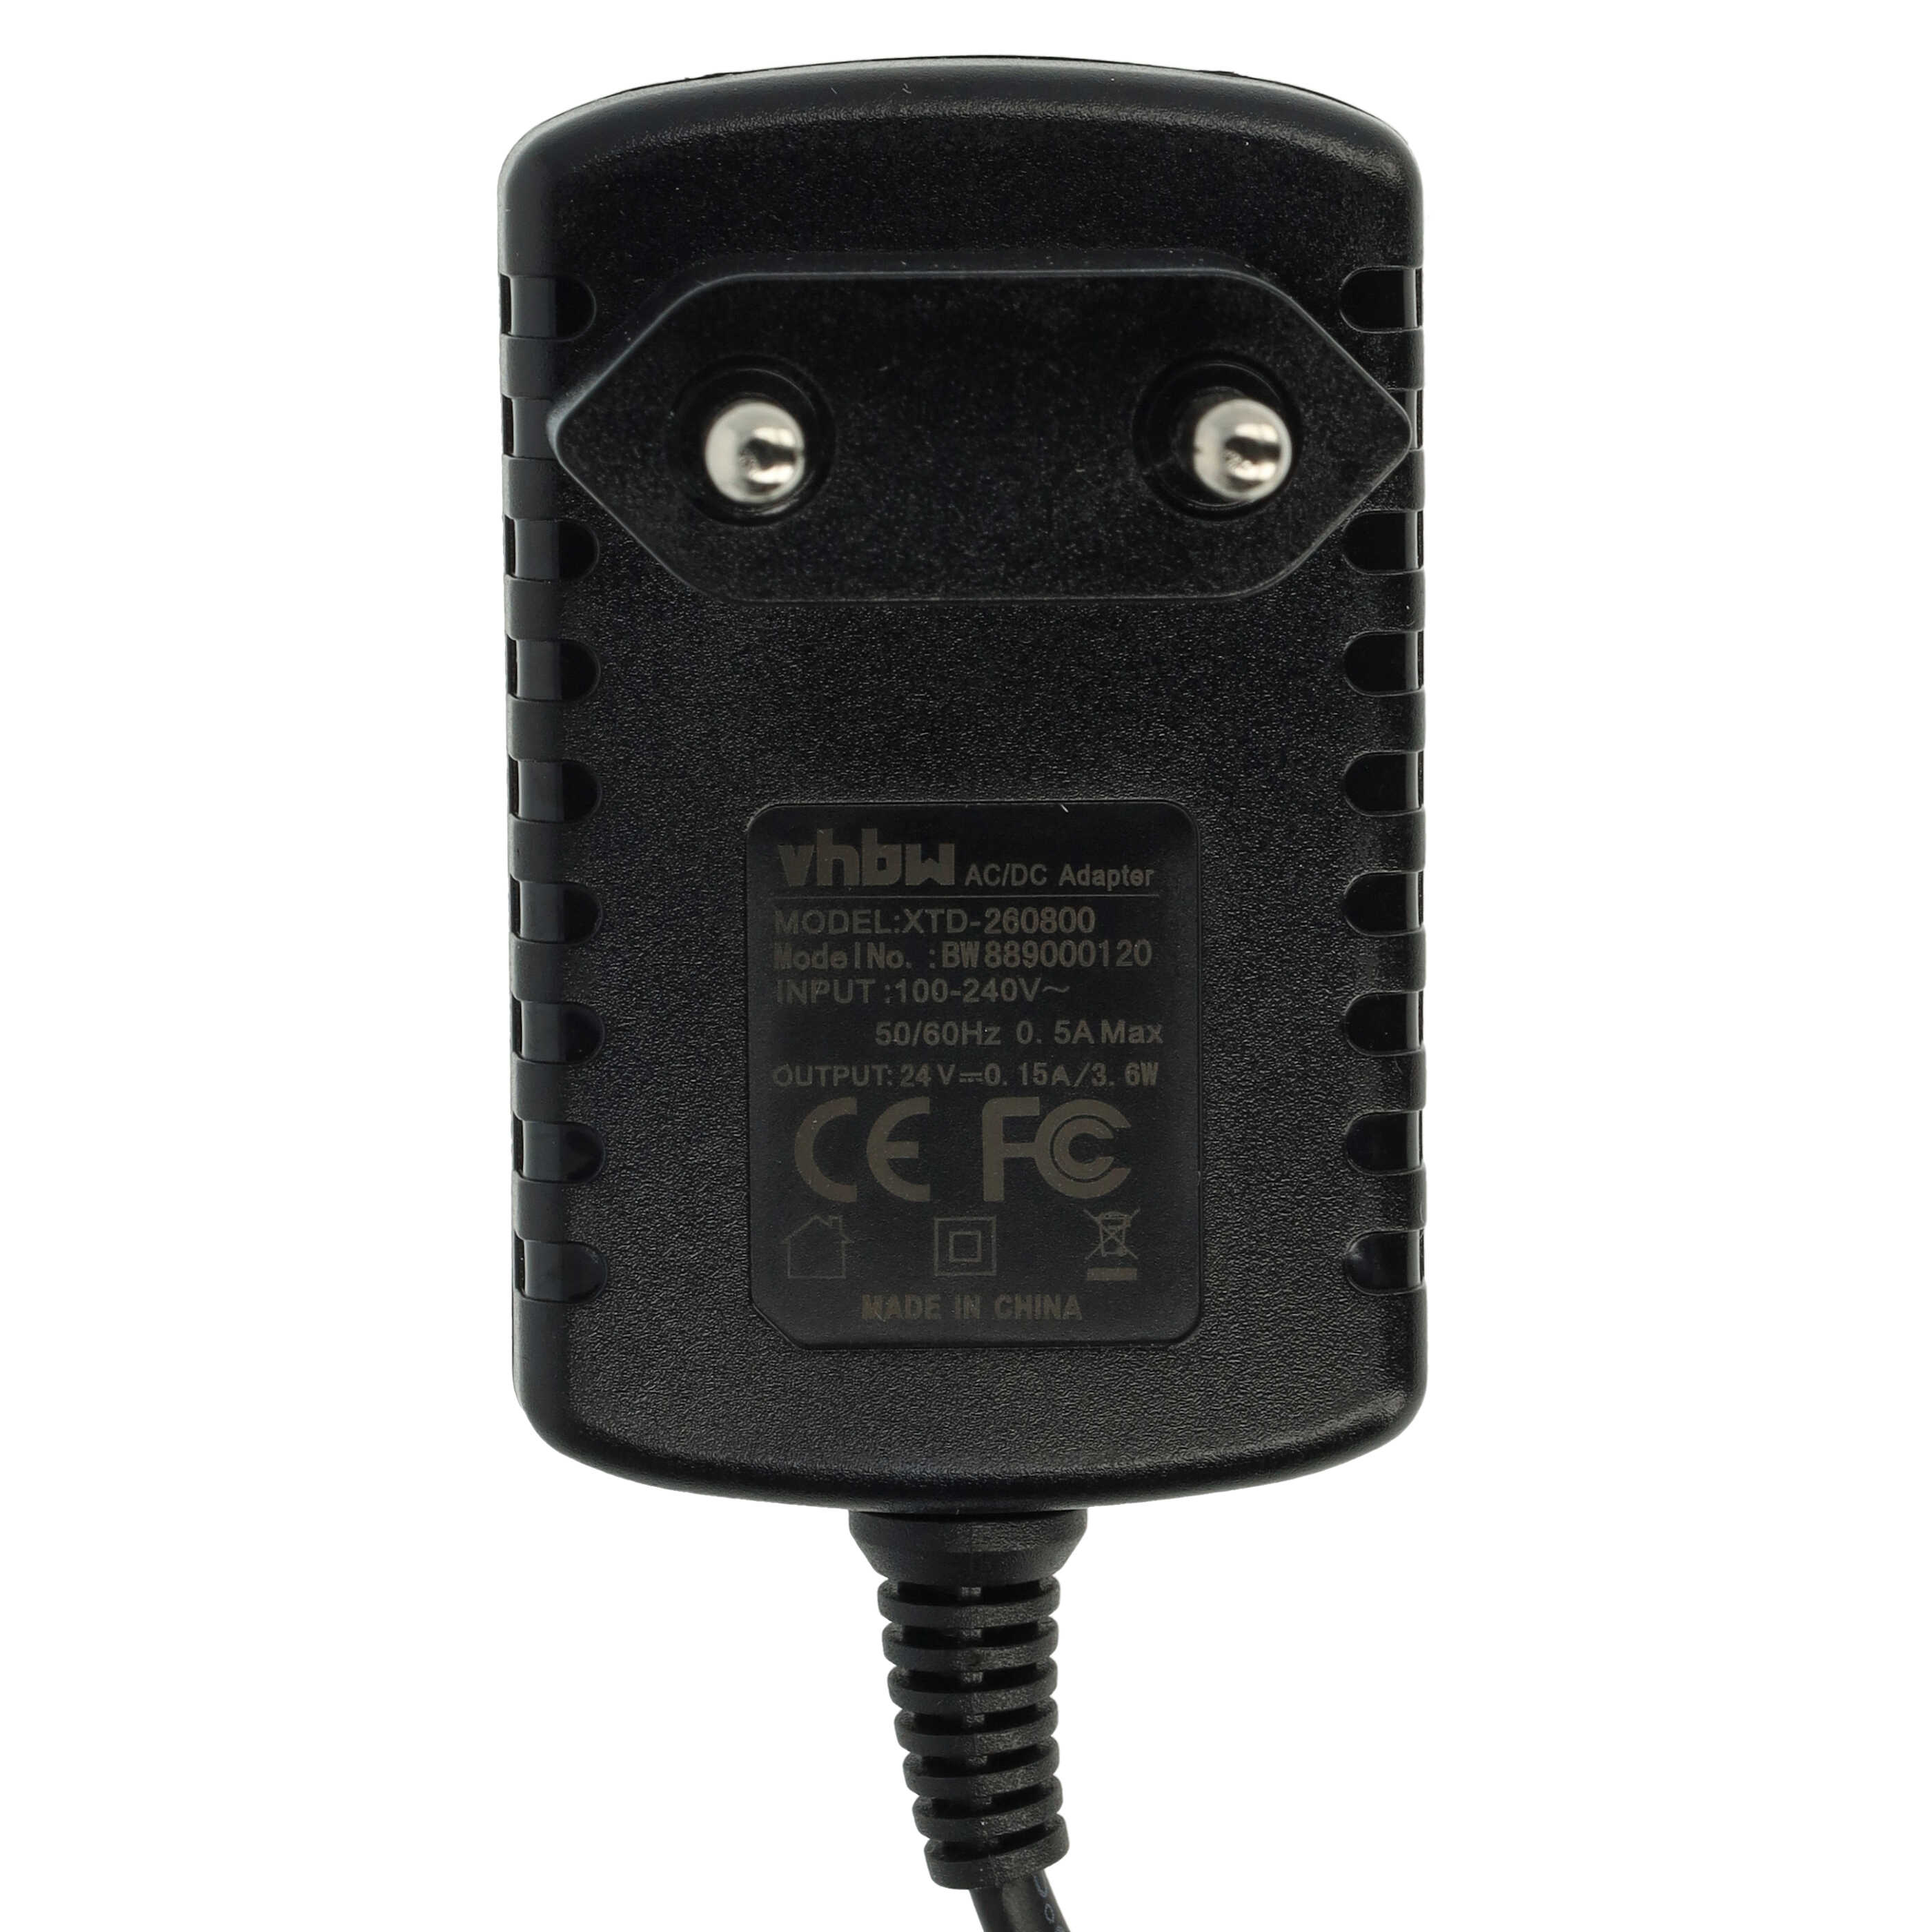 Chargeur remplace Dirt Devil 0137005, 401246793, HK-AE-240A030-EU pour aspirateur sans fil, à main De Longhi